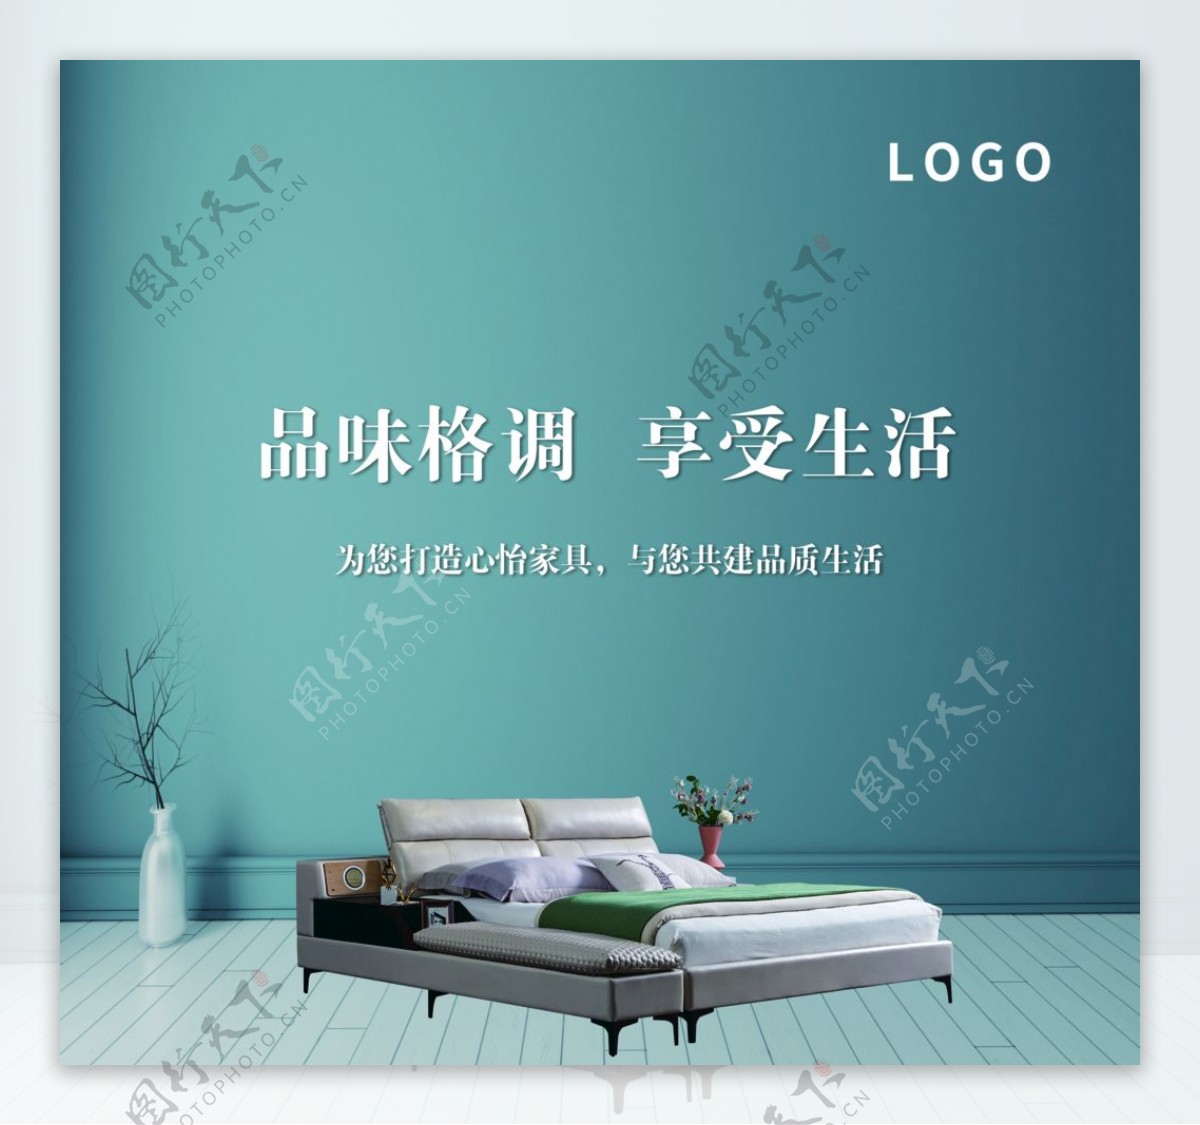 软床家具广告图片